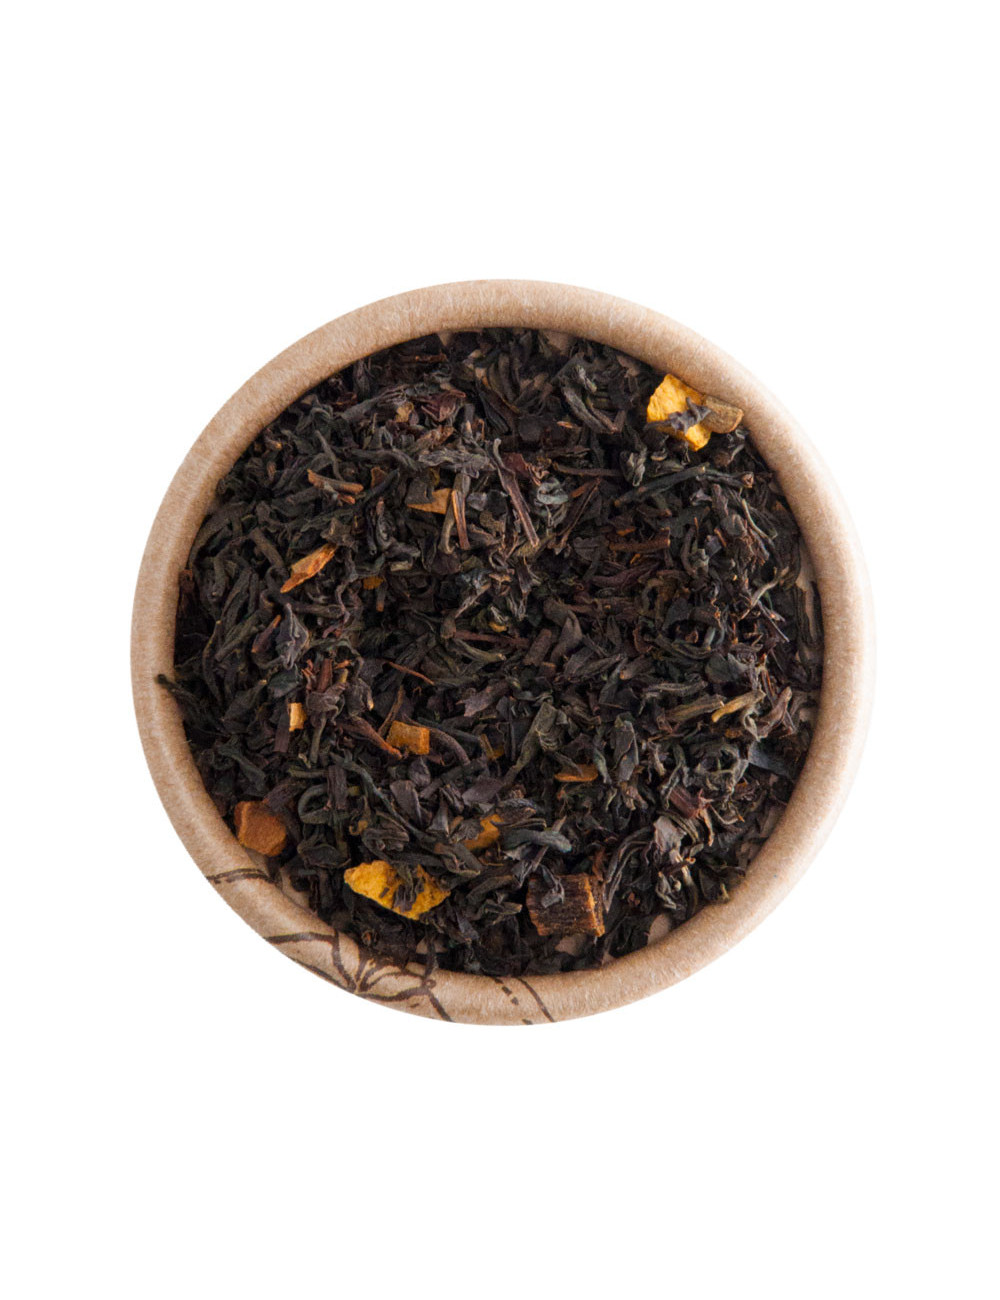 Mistero d'Oriente tè nero aromatizzato - La Pianta del Tè shop online